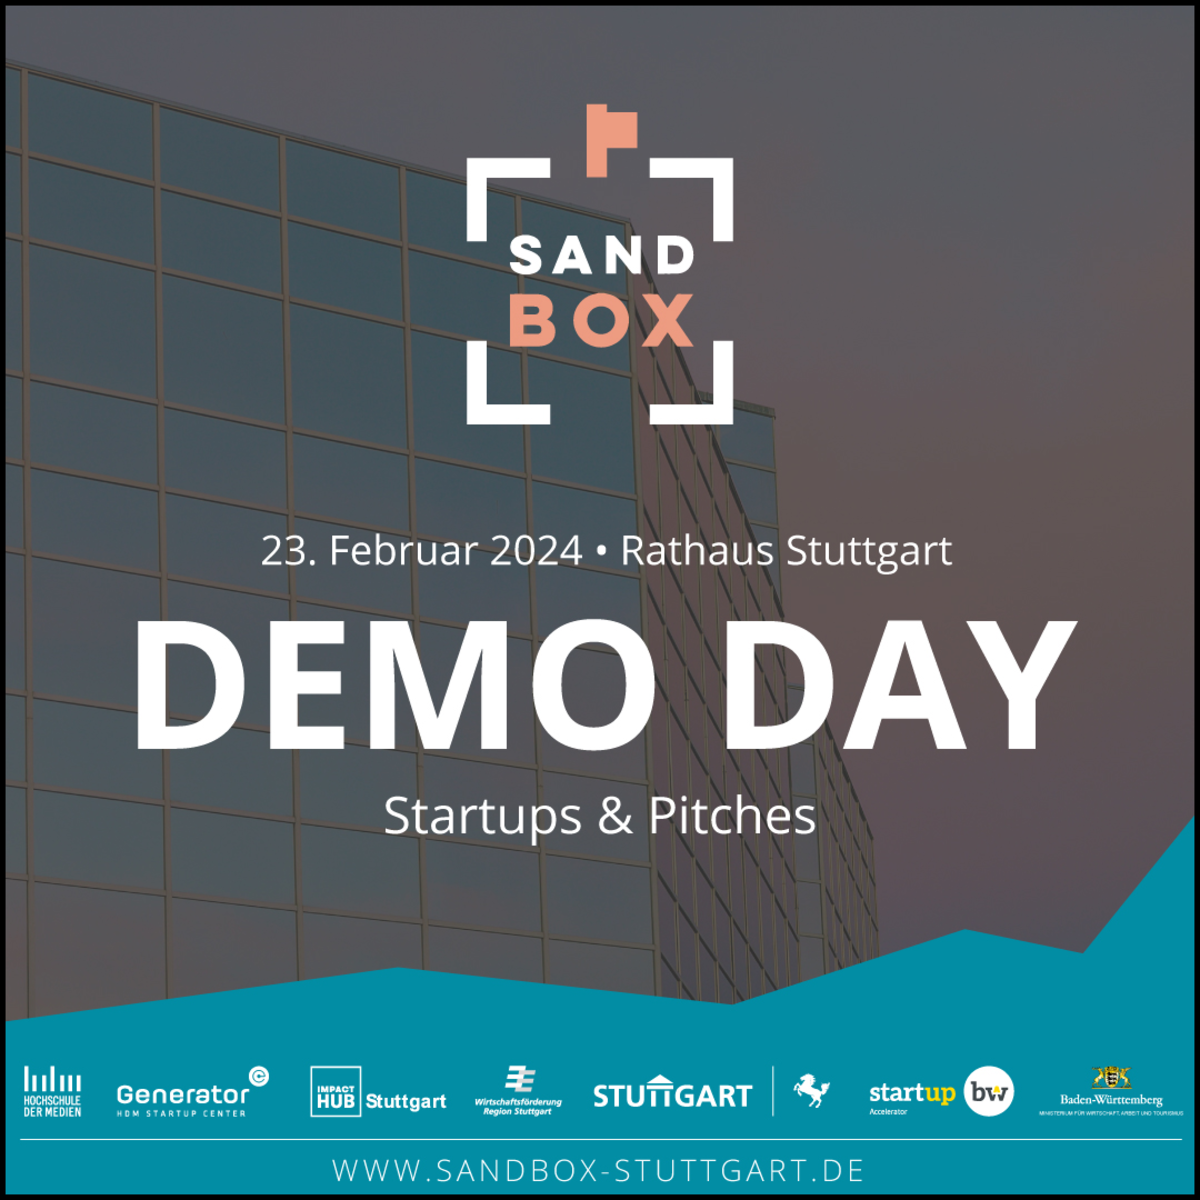 Veranstaltungshinweis mit Flyer: Sandbox Demo Day am 23. Februar 2024. Bild verlinkt zum Nachbericht unter https://www.startupbw.de/the-start-up-laend/news/meldungen/bloom-aus-der-sandbox-gewinnt-den-regional-cup-stuttgart.